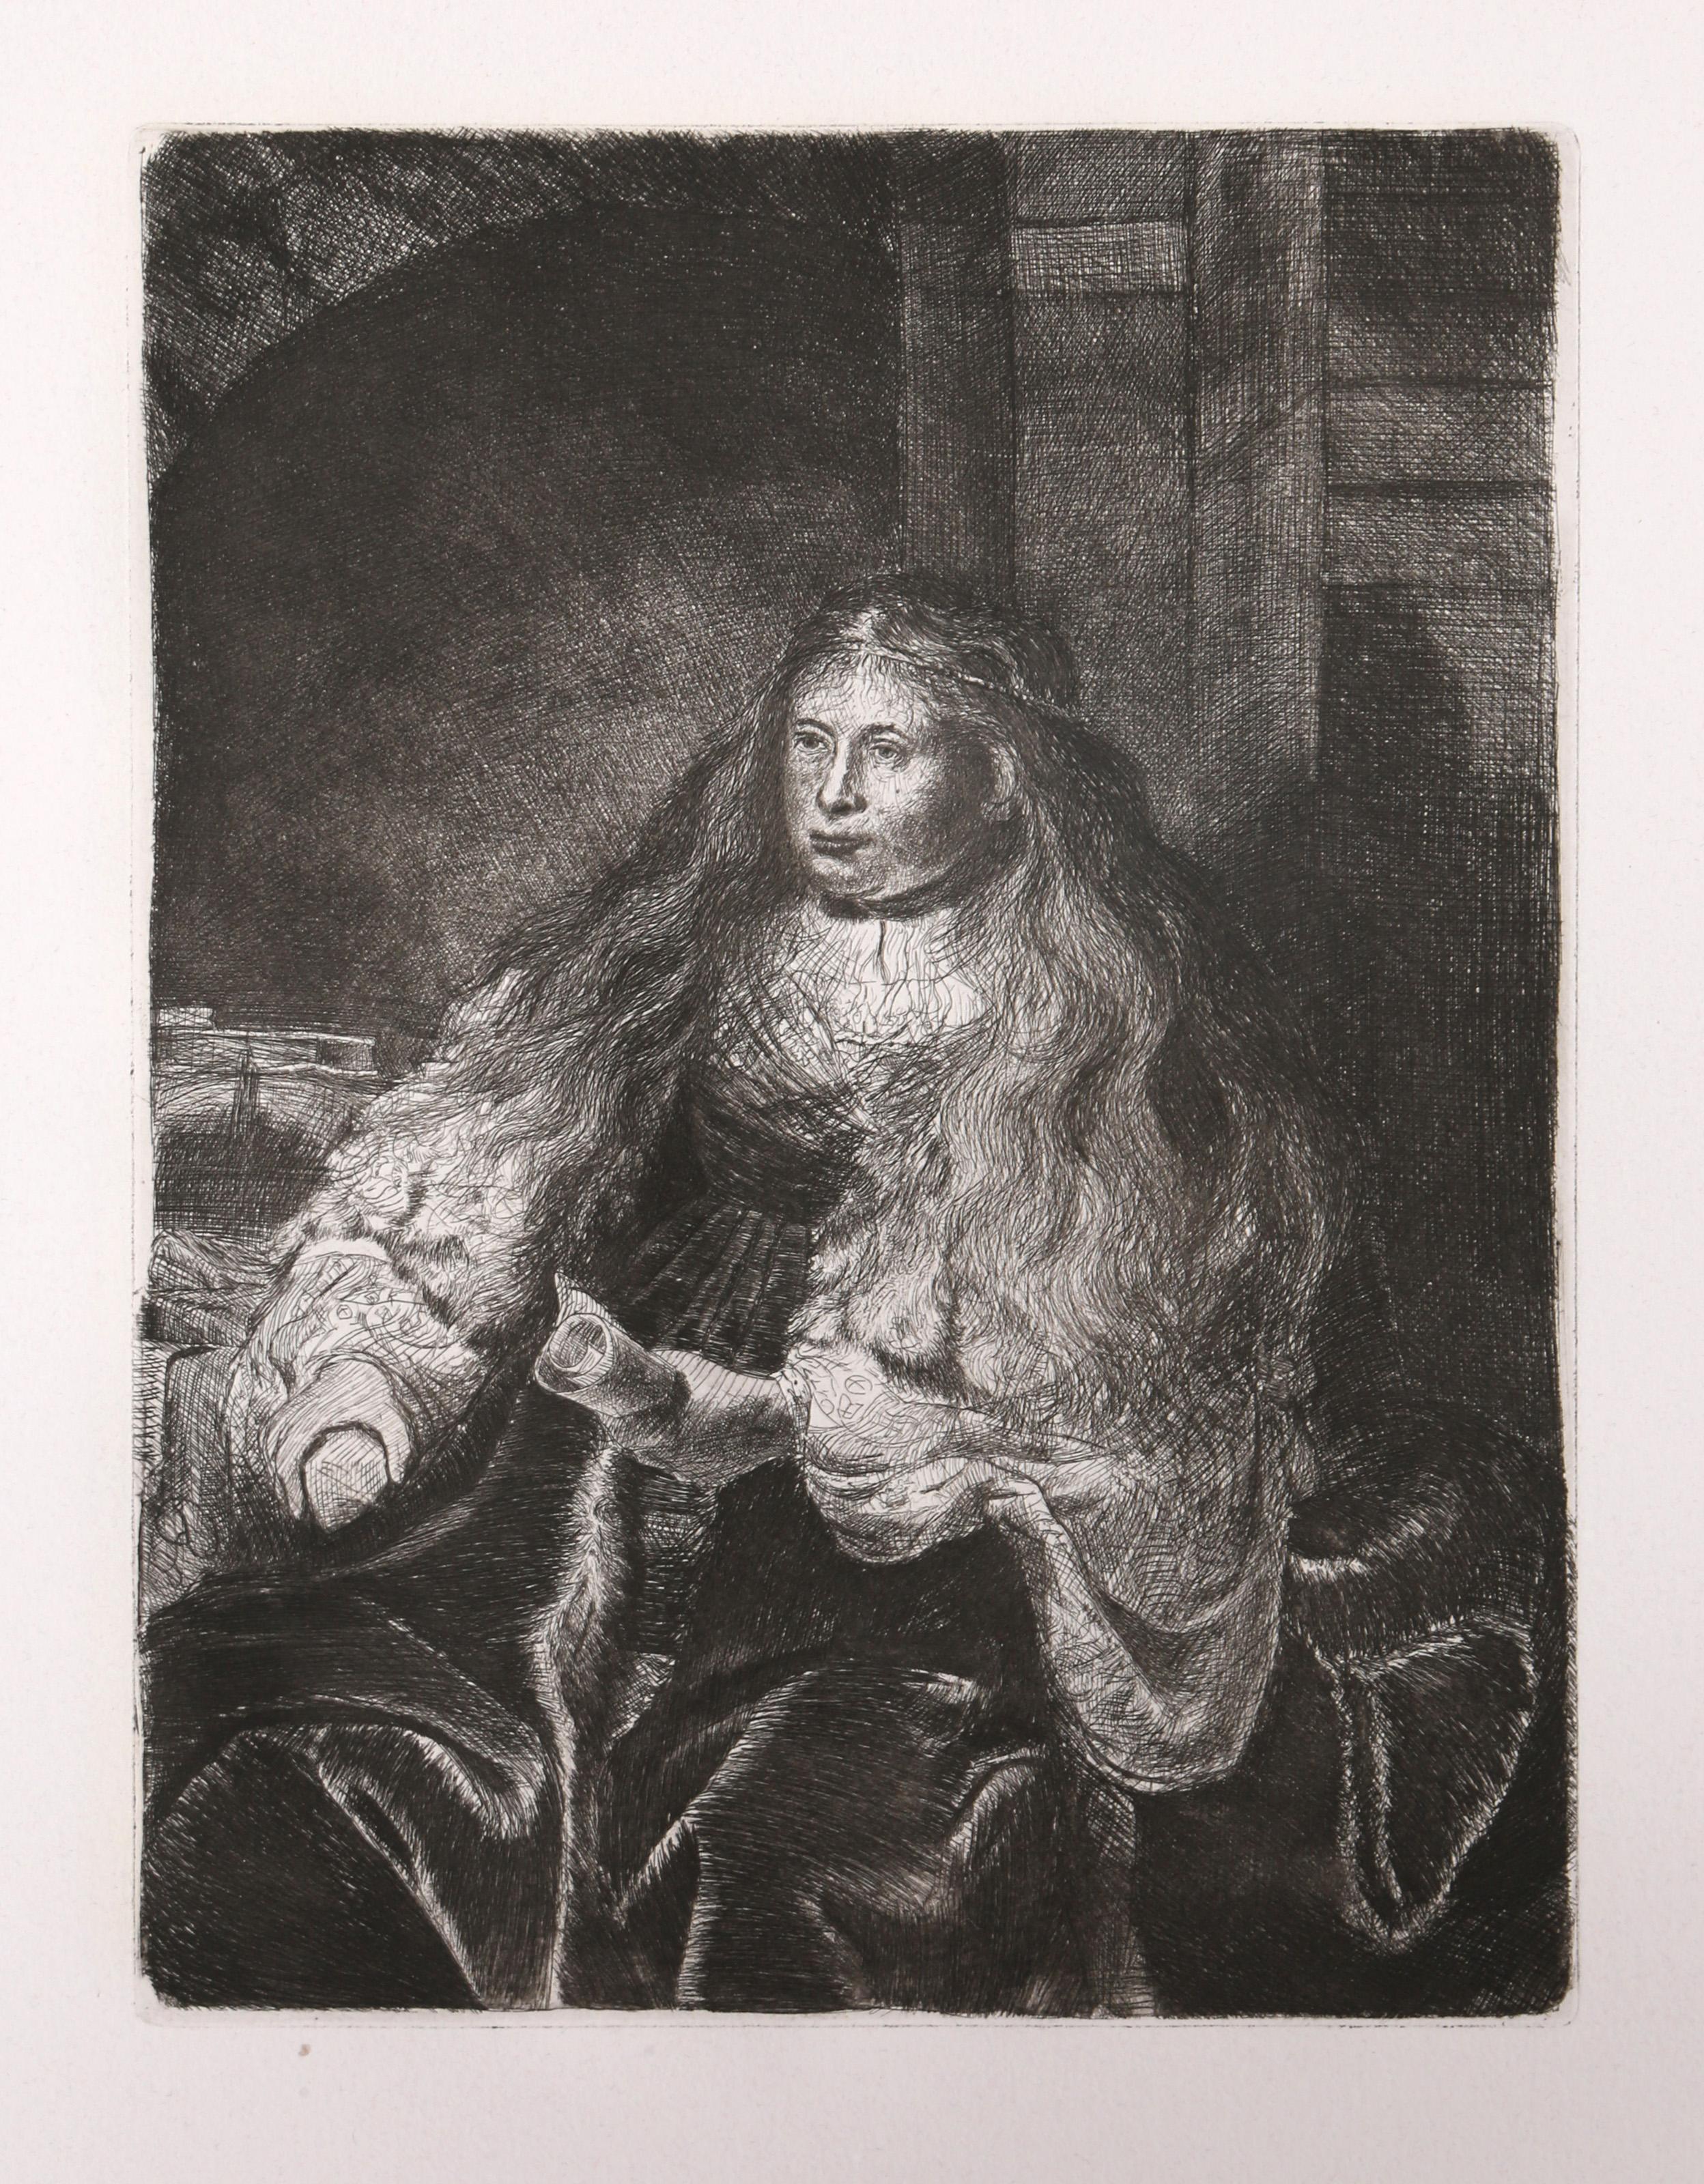 Künstler: Rembrandt van Rijn, nach Amand Durand, Niederländer (1606 - 1669) -  Die große jüdische Braut (B340), Jahr: des Originals 1635, Medium: Radierung auf Büttenpapier, Bildformat: 12 x 9 Zoll, Größe: 26  x 20 in. (66.04  x 50,8 cm), Drucker: